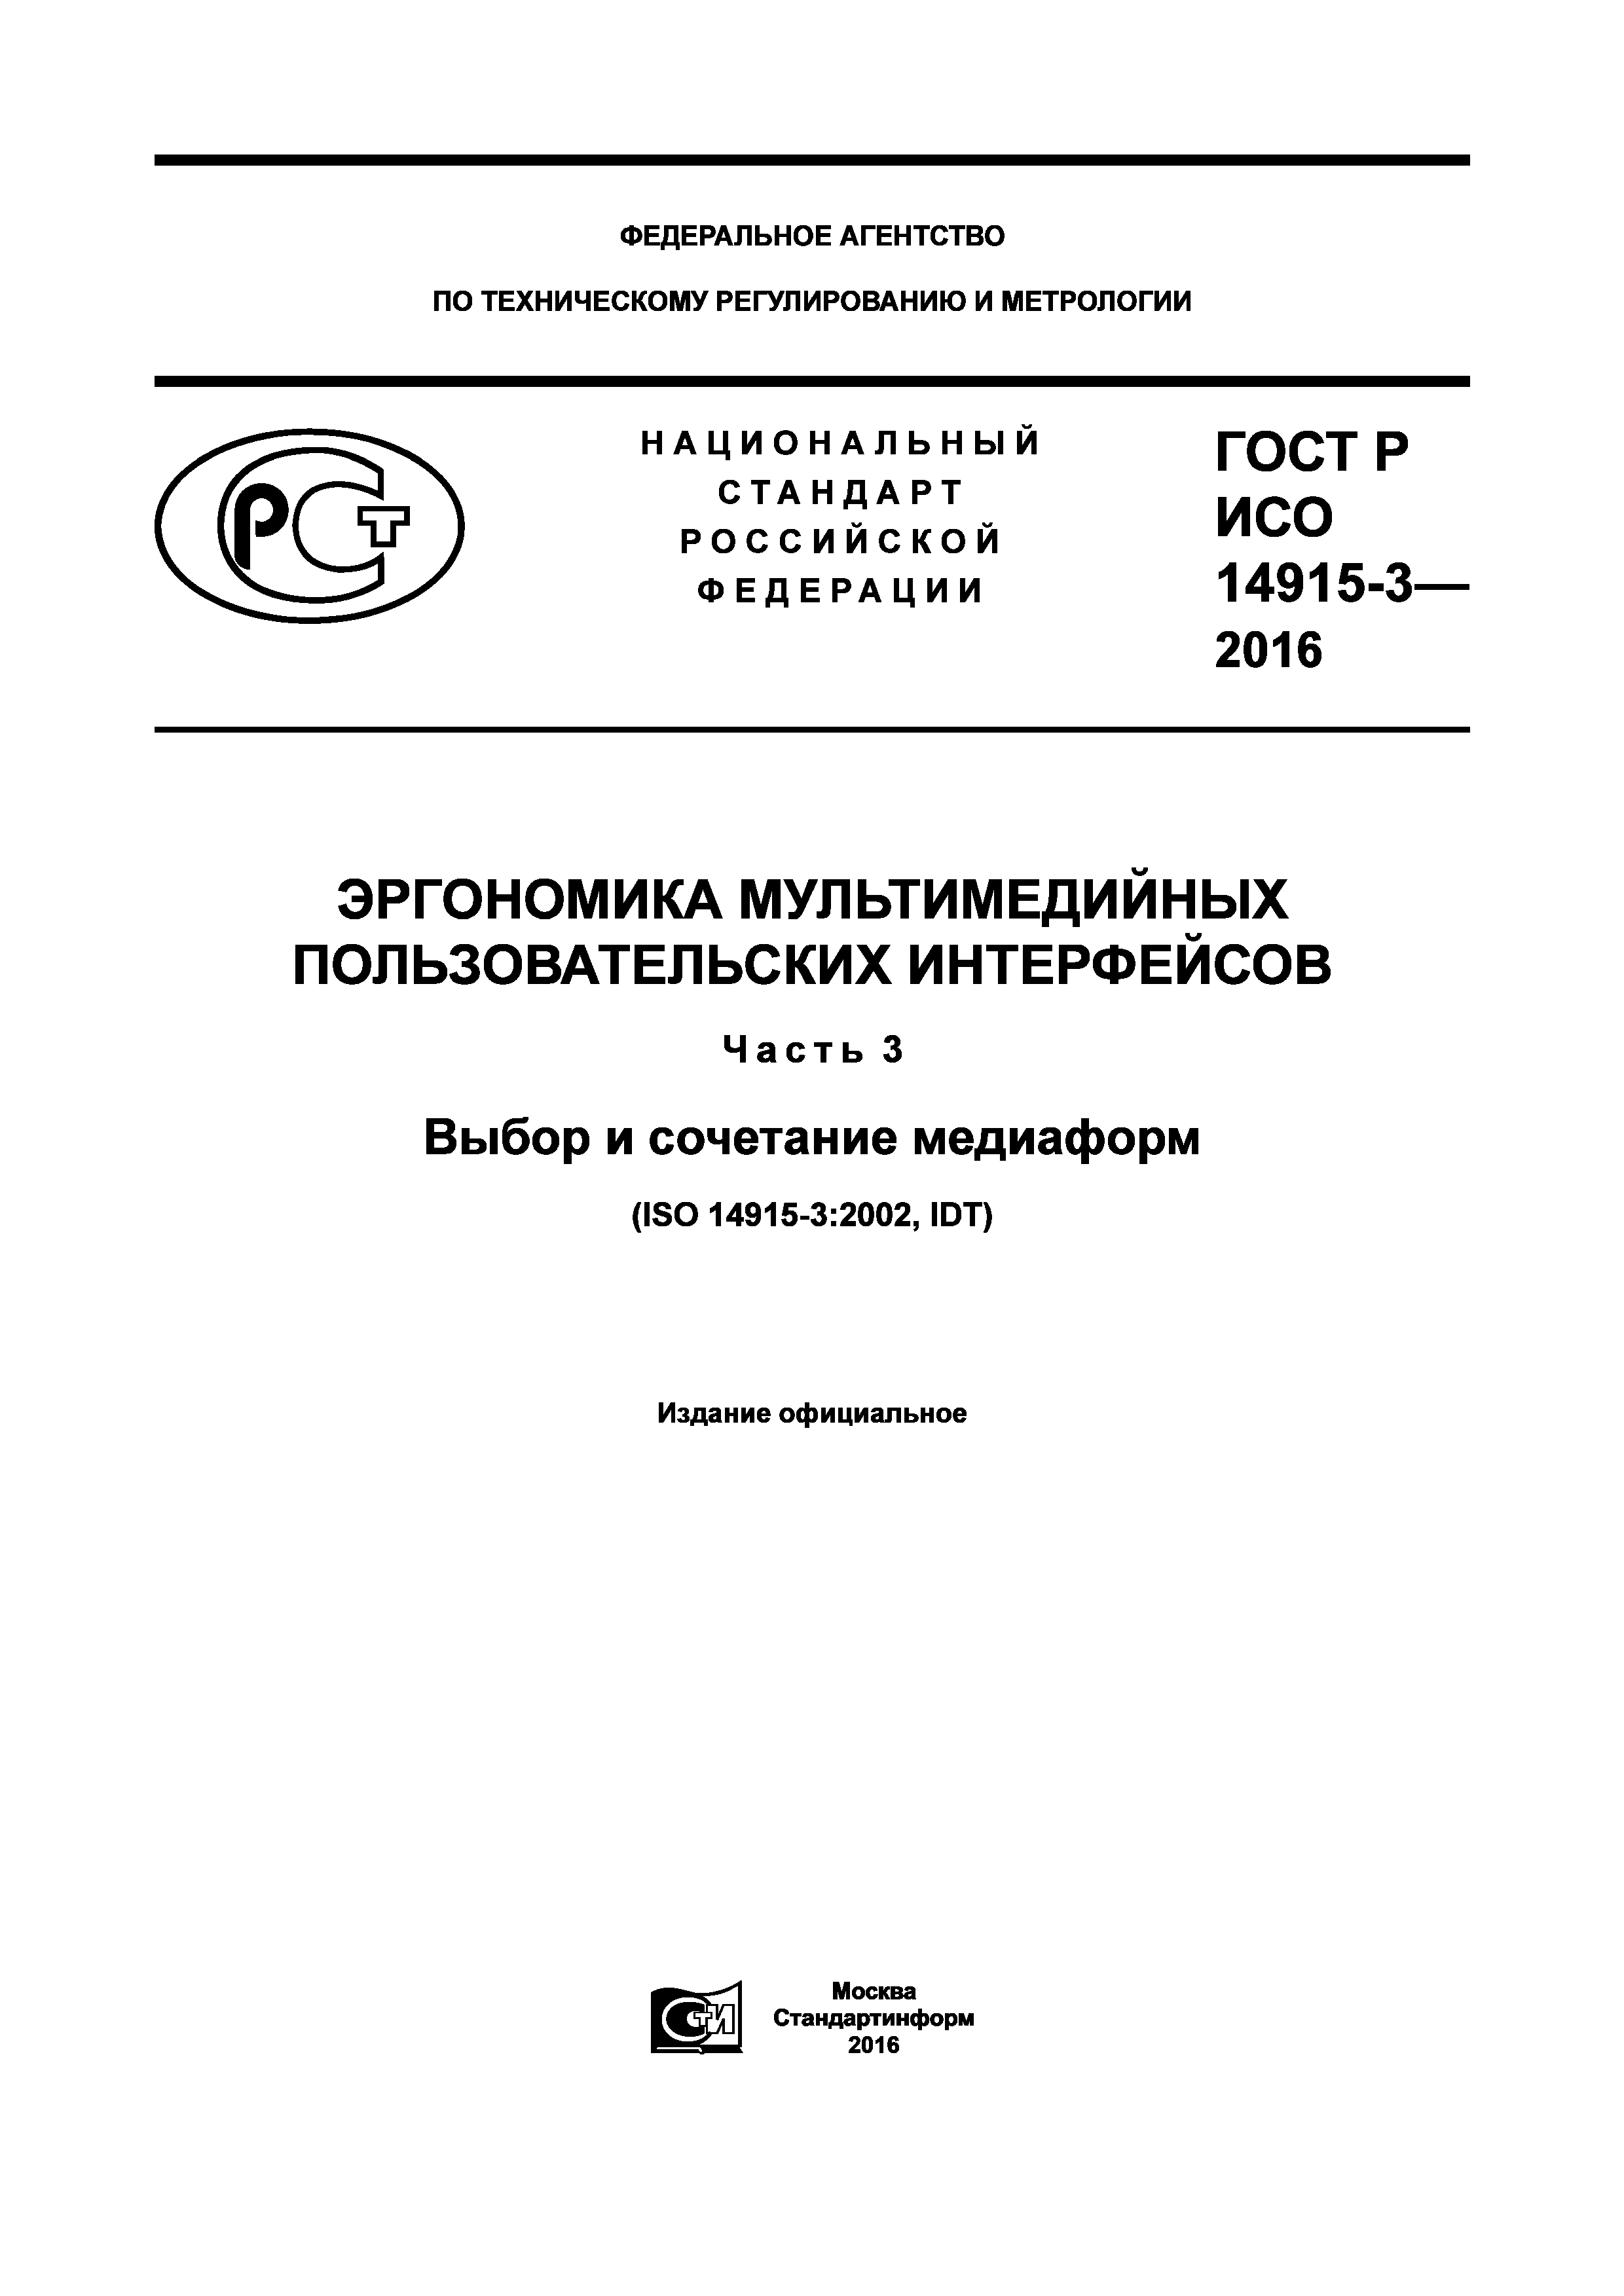 ГОСТ Р ИСО 14915-3-2016